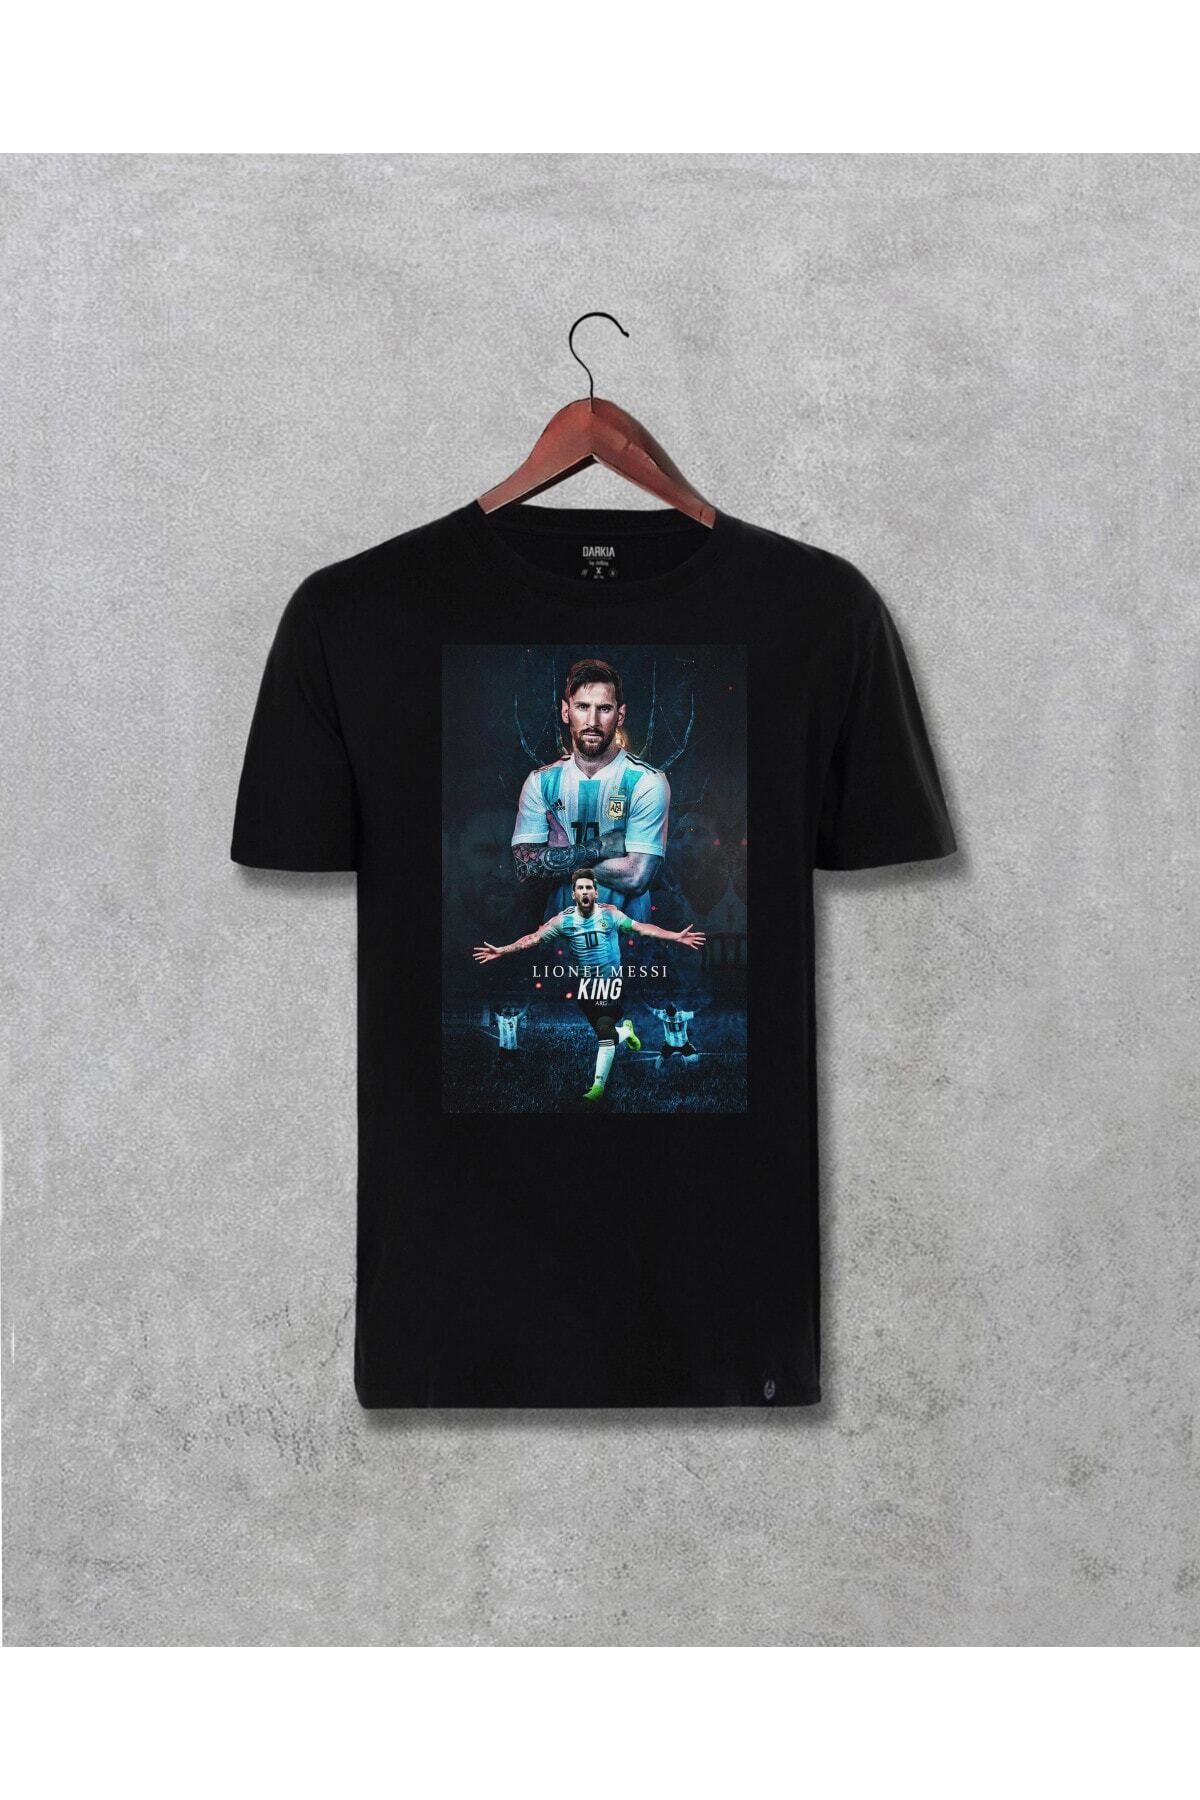 Pisa Art Lionel Messi The King Arjantin Tasarımı Baskılı (unisex) T-shirt